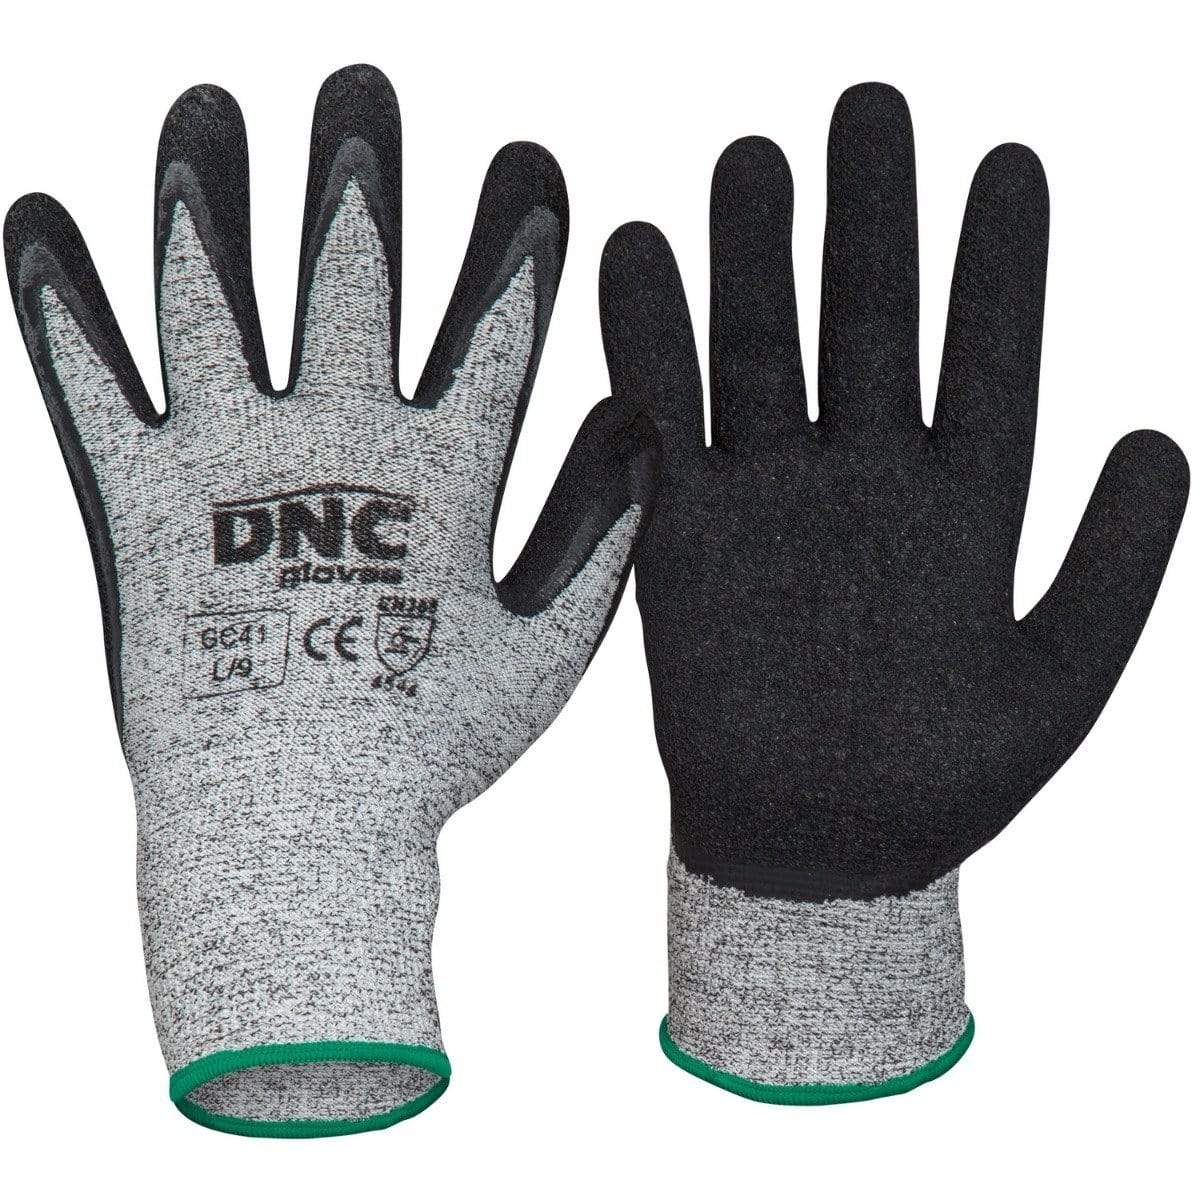 Dnc Workwear Cut5- Latex - GC41 PPE DNC Workwear Black/Grey 2XL/11 